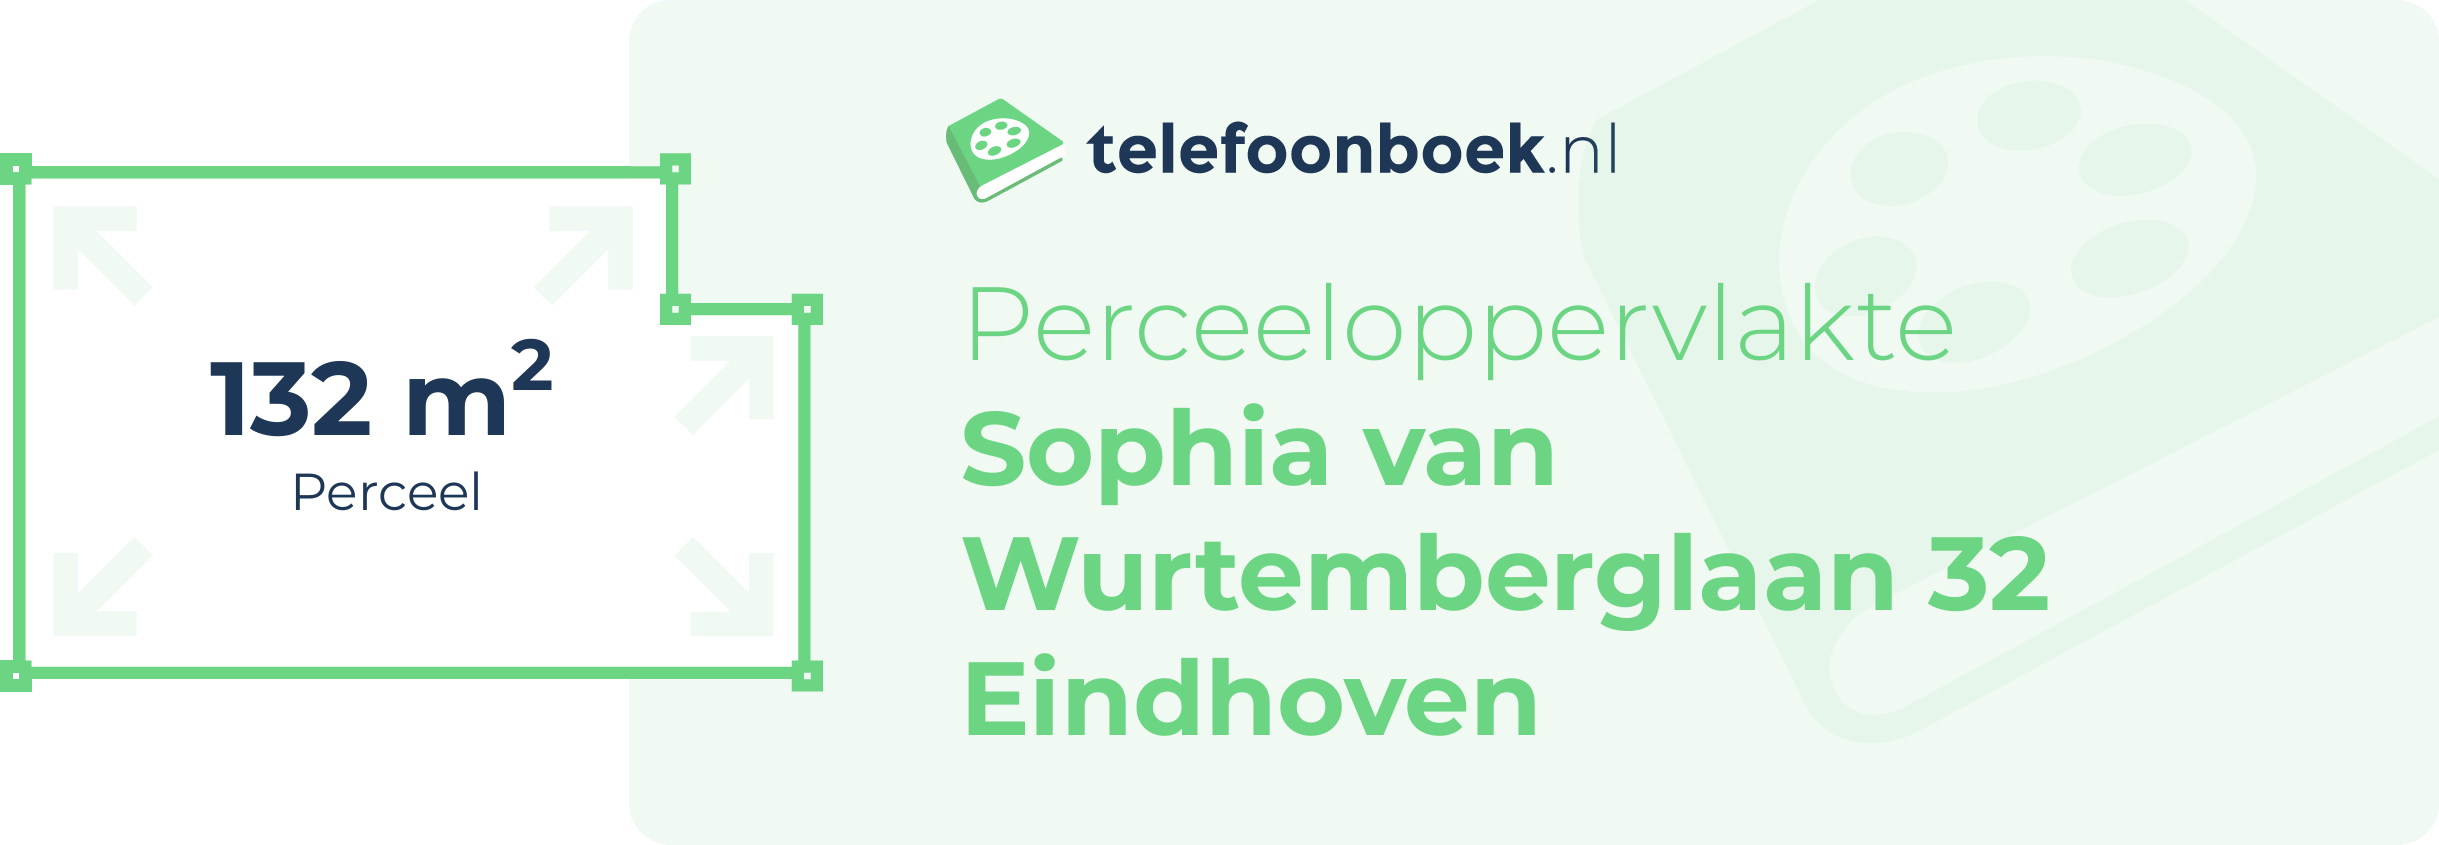 Perceeloppervlakte Sophia Van Wurtemberglaan 32 Eindhoven